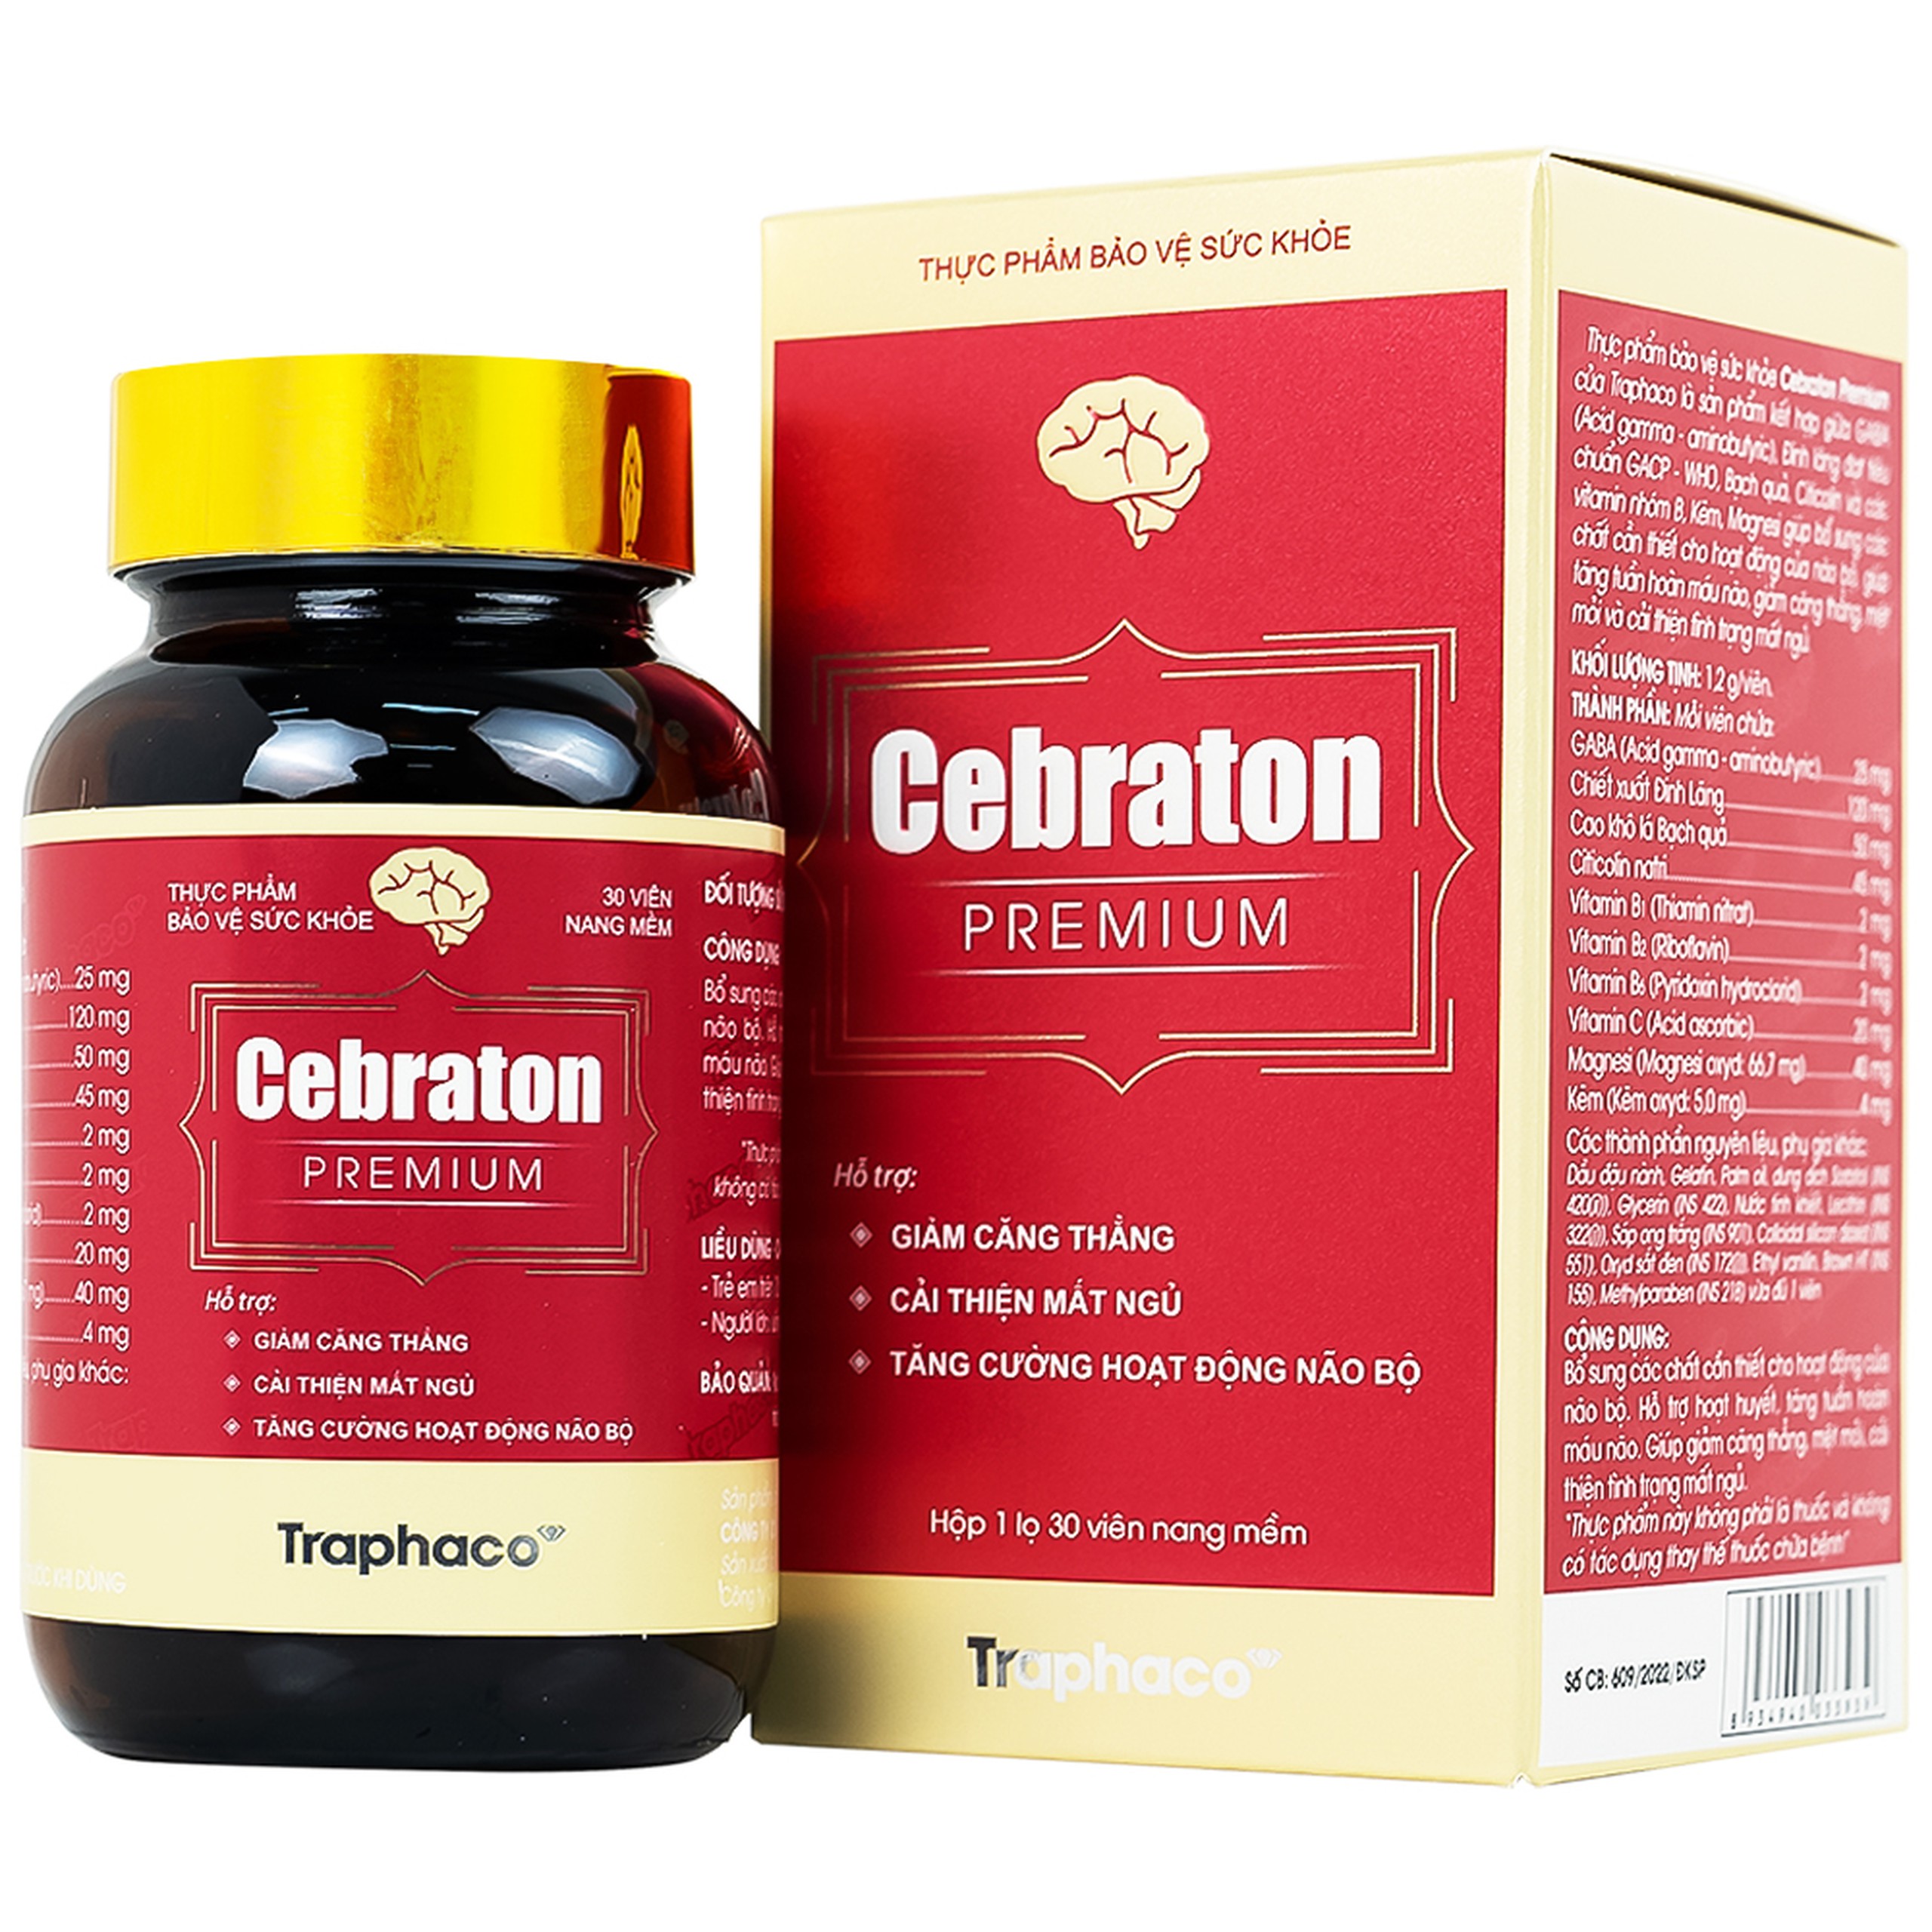 Viên uống Cebraton Premium Traphaco bổ sung vitamin cho não bộ, tăng tuần hoàn máu não (30 viên)